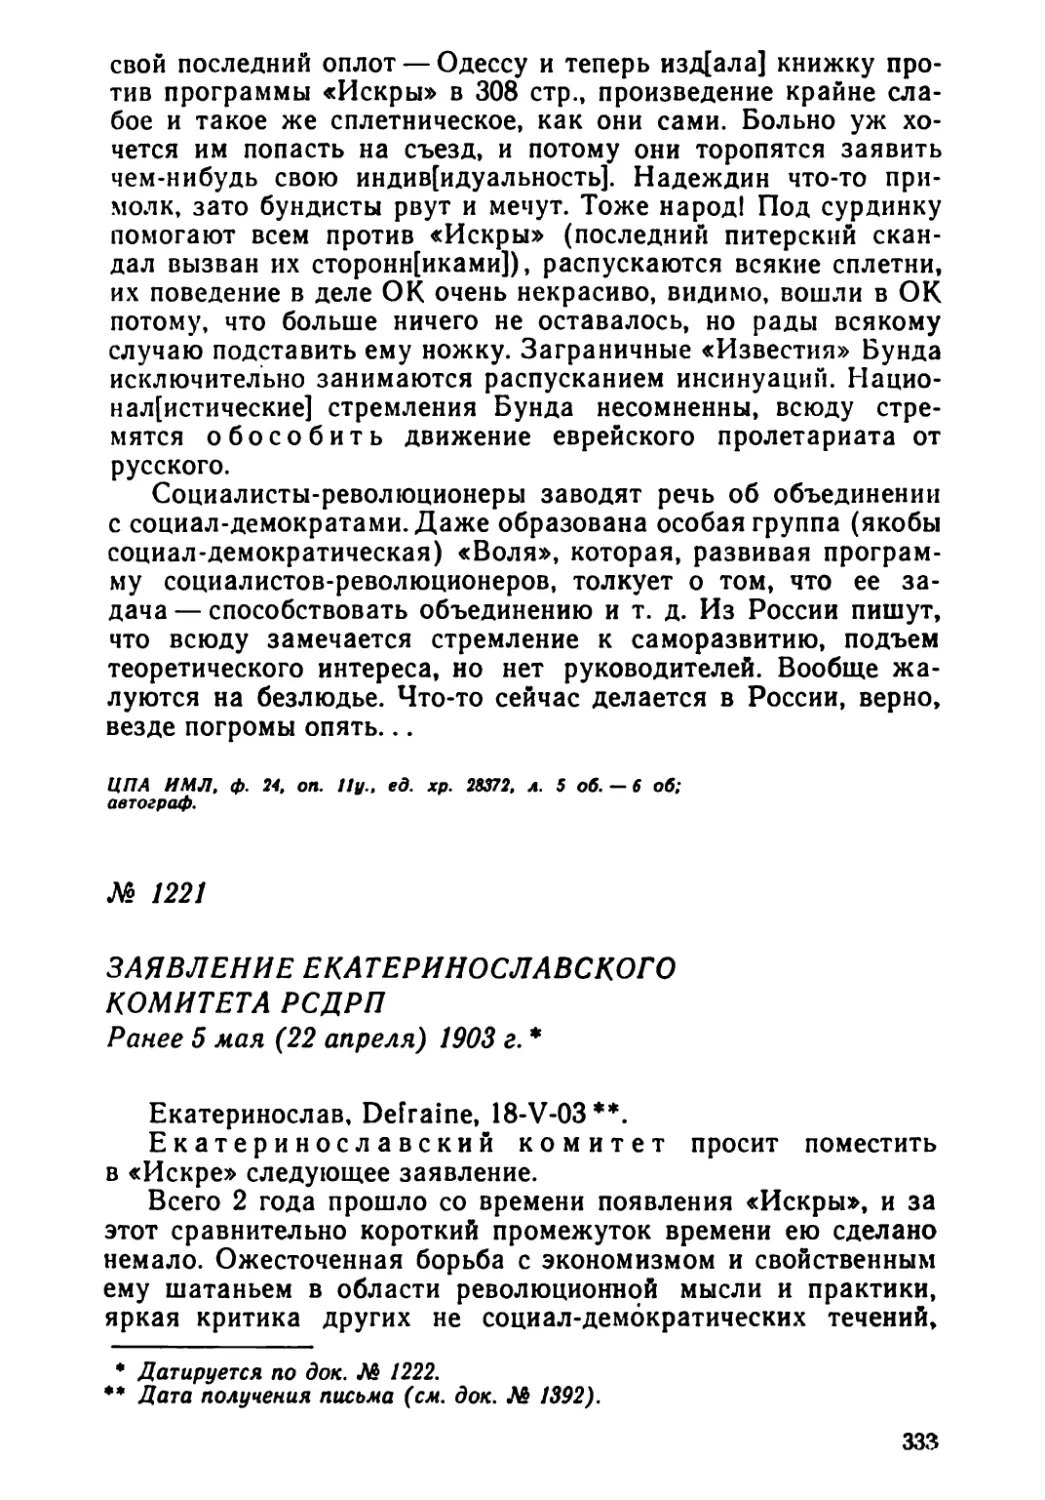 № 1221 Заявление Екатерннославского комитета РСДРП. Ранее 5 мая